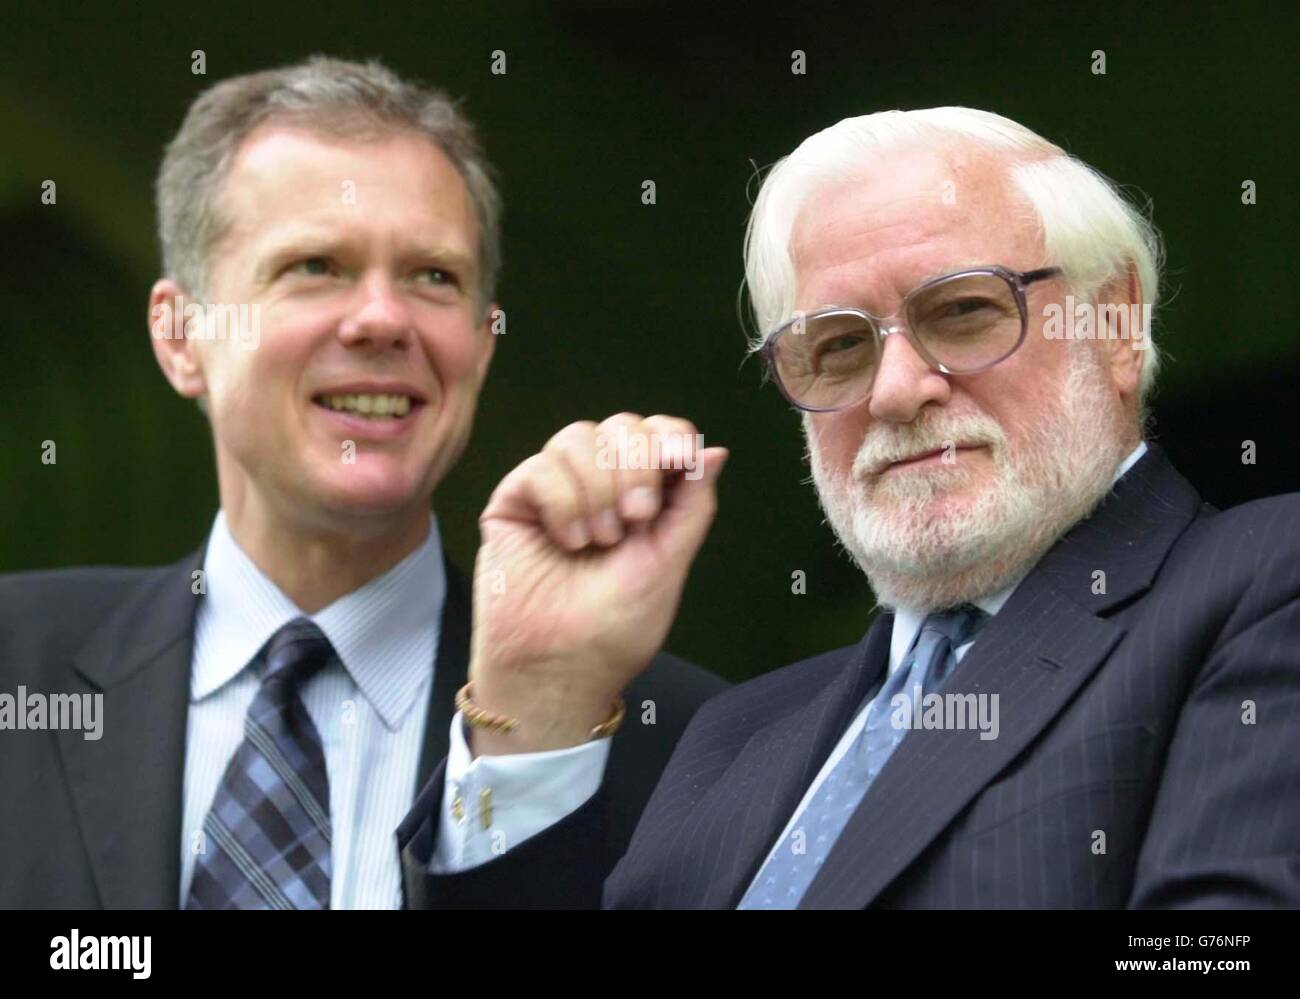 Ken Bates, presidente de Chelsea, con su nuevo ejecutivo Trevor Burch  durante un partido libre entre Wycombe Wanderers y Chelsea en High Wycombe.  * 2/7/03: Un empresario ruso multimillonario ha comprado una